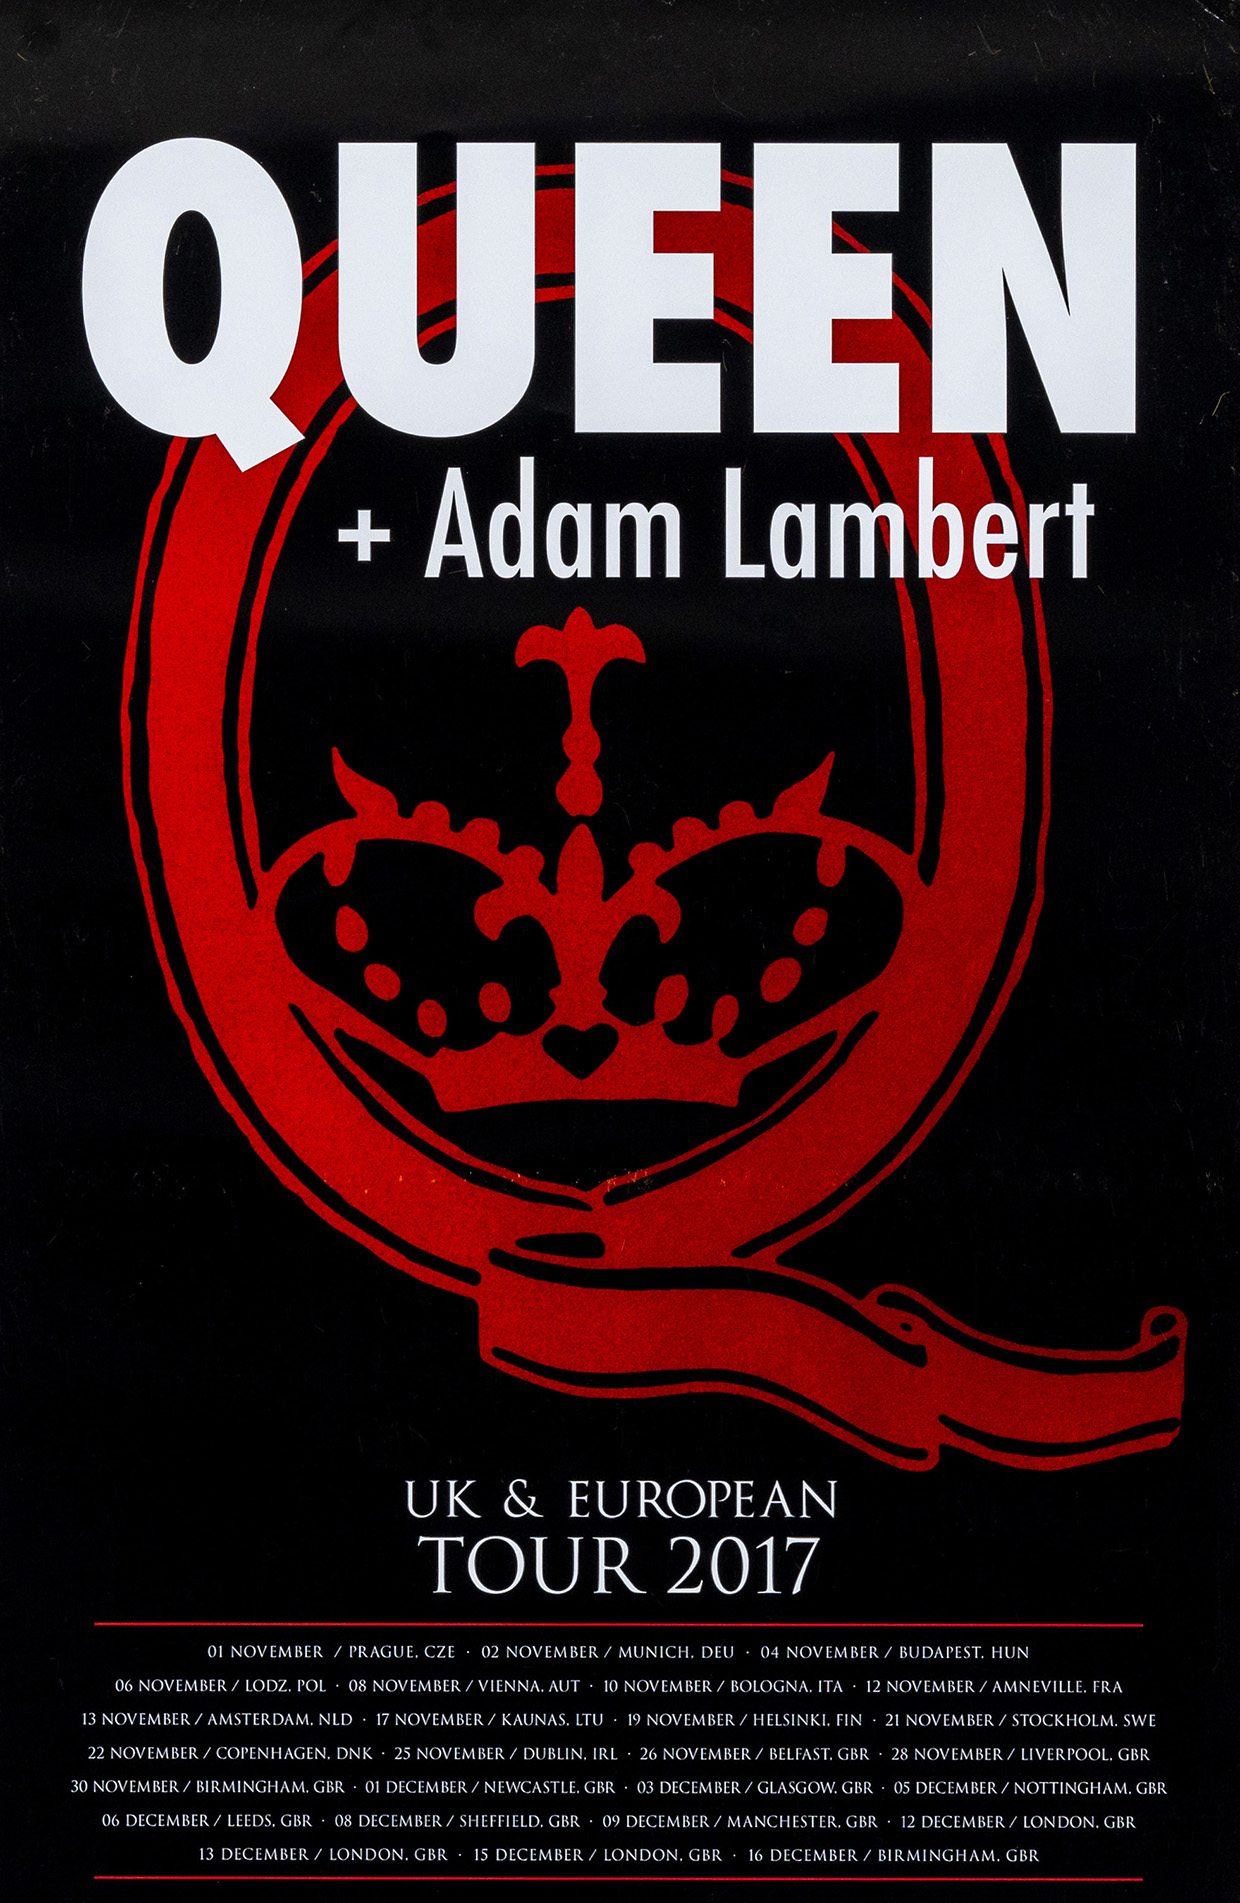 Queen + Adam Lambert on tour in 2017